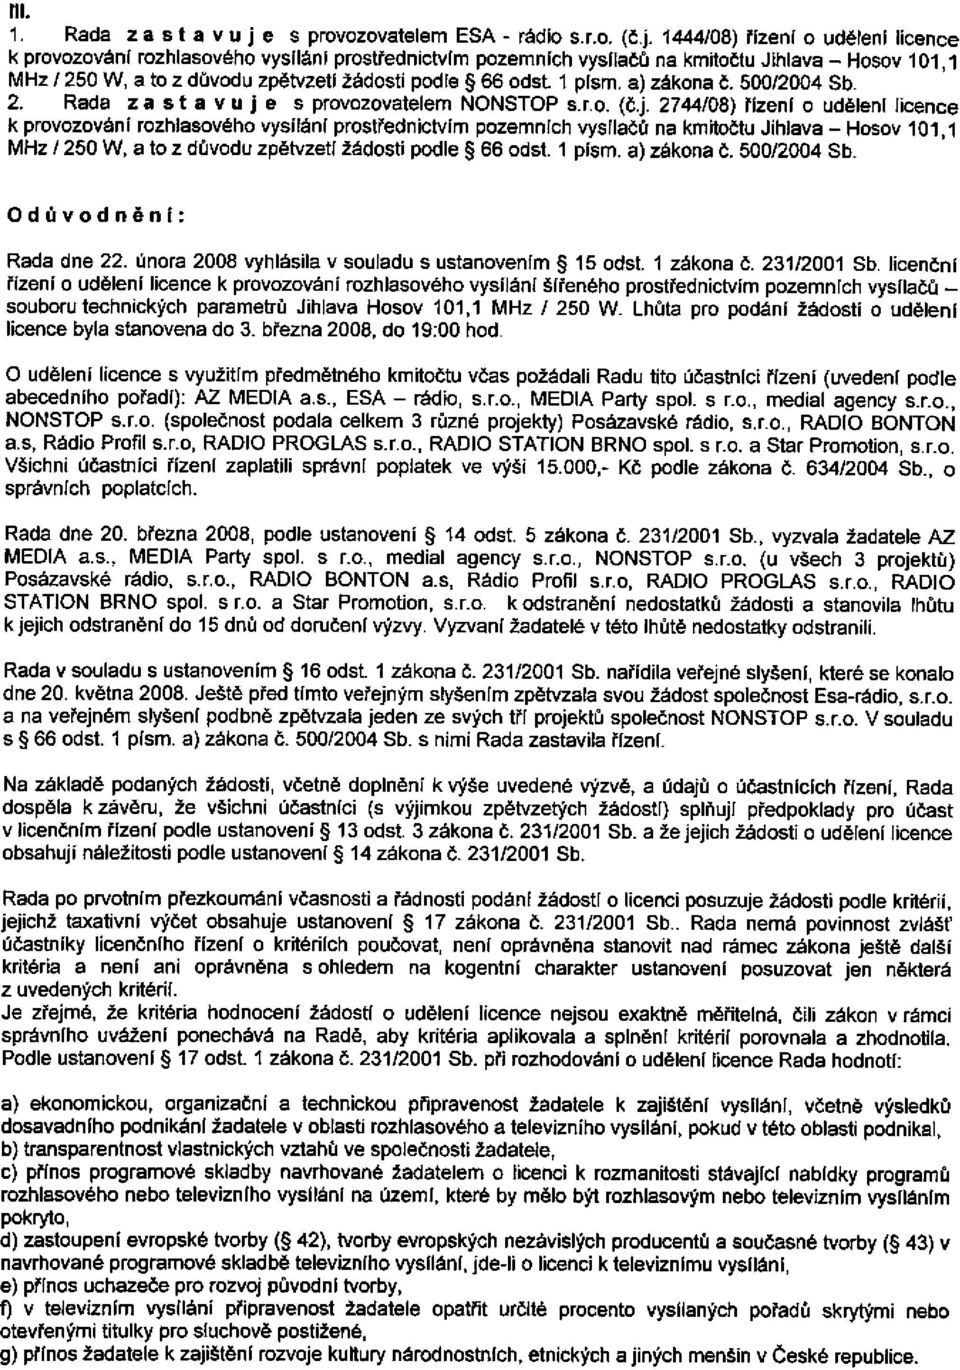 1444/08) řízení o udělení licence k provozování rozhlasového vysílání prostřednictvím pozemních vysílačů na kmitočtu Jihlava - Hosov 101,1 MHz / 250 W, a to z důvodu zpětvzetí žádosti podle 66 odst 1